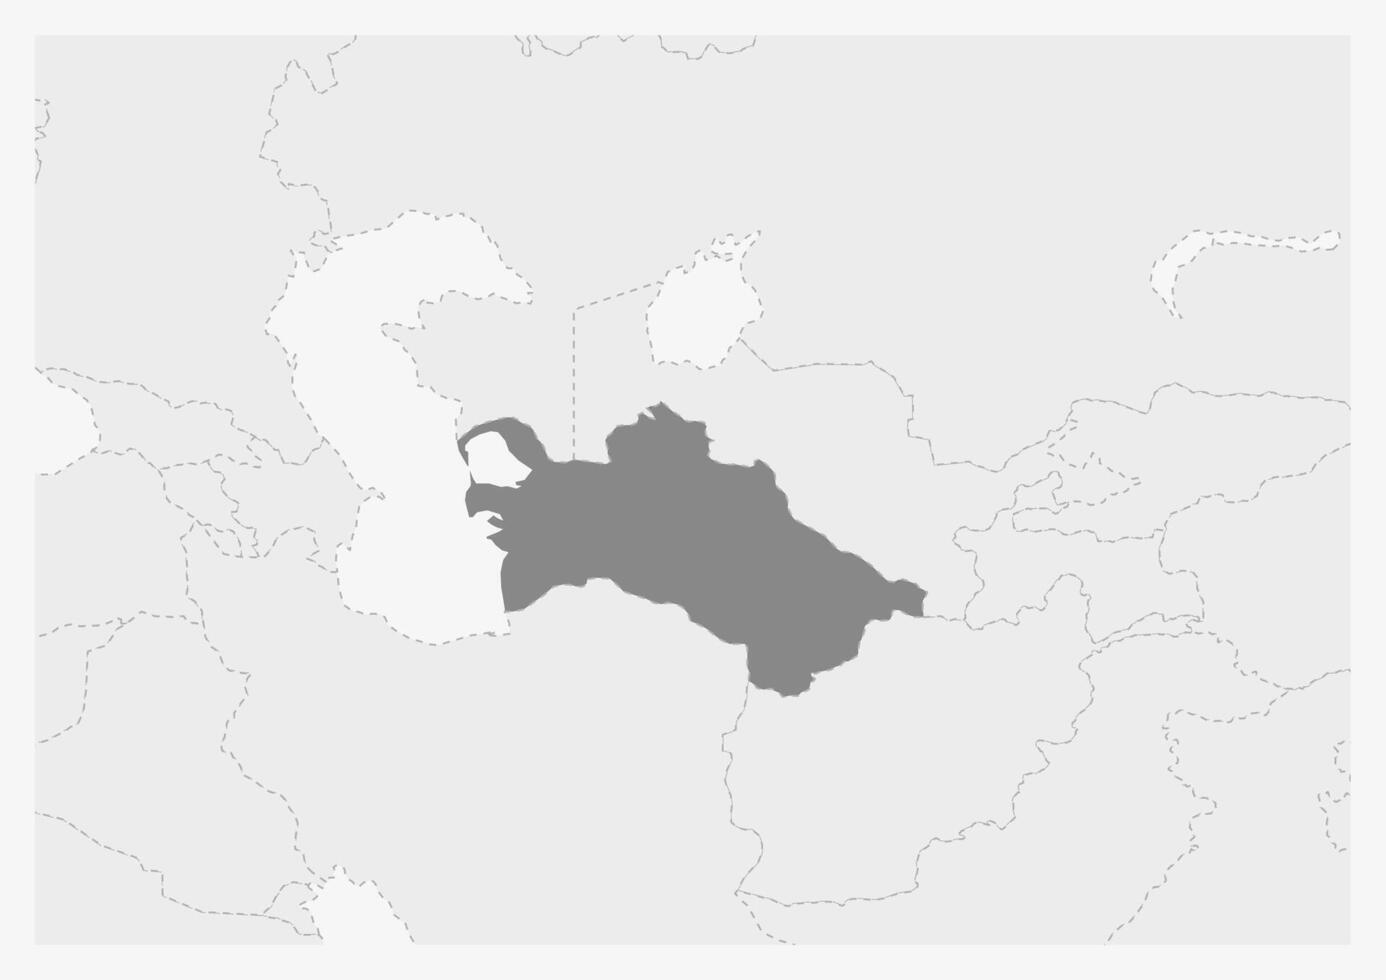 Karte von Asien mit hervorgehoben Turkmenistan Karte vektor